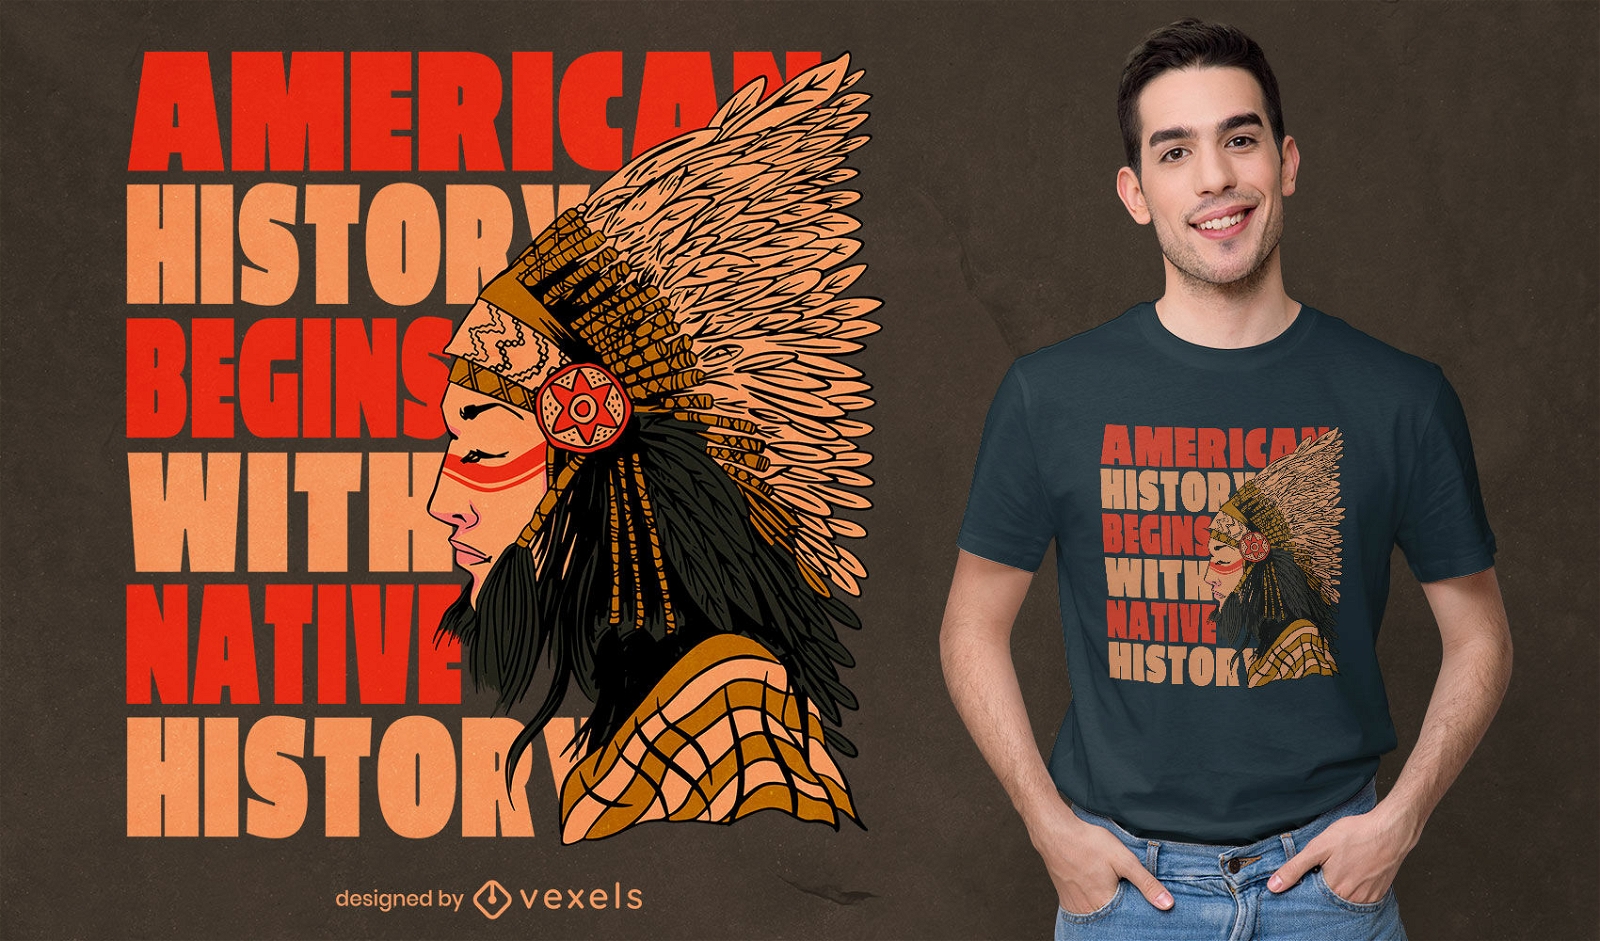 Dise?o de camiseta con cita de historia nativa americana